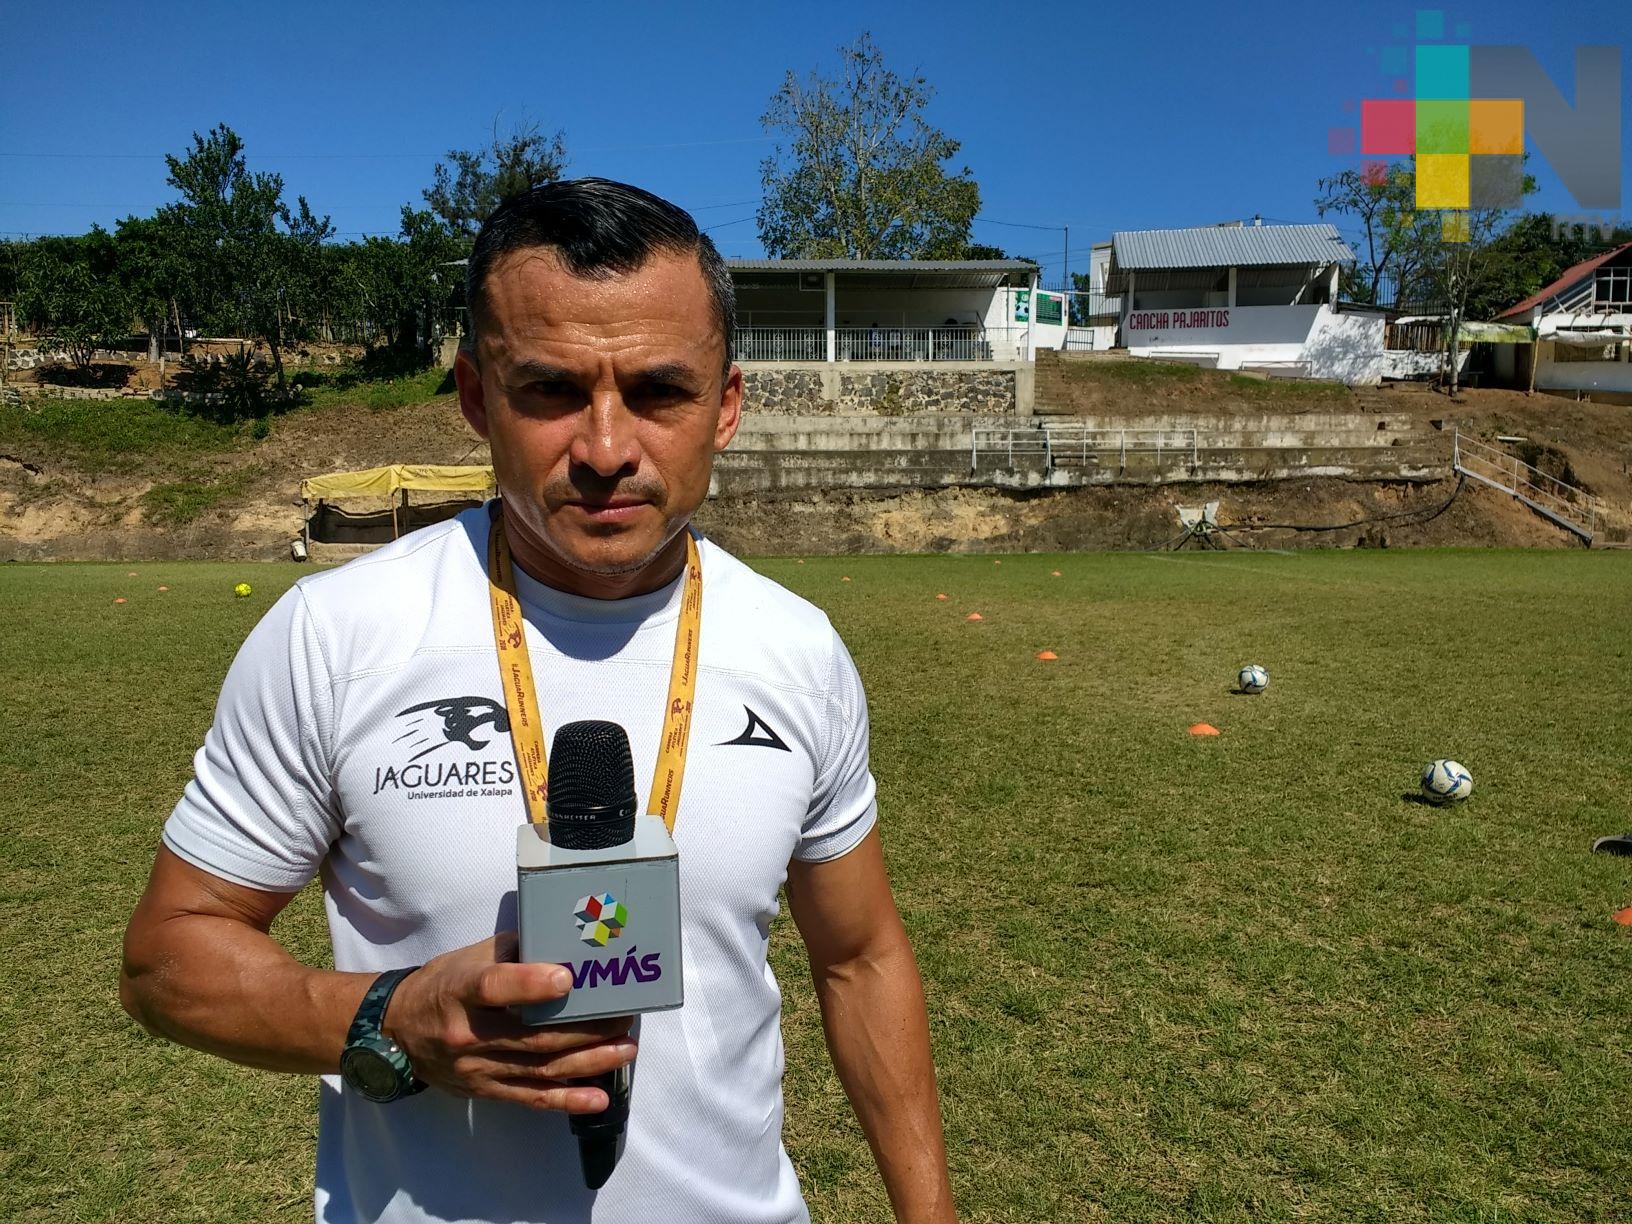 Jaguares UX futbol soccer por el pase al Nacional de CONDDE